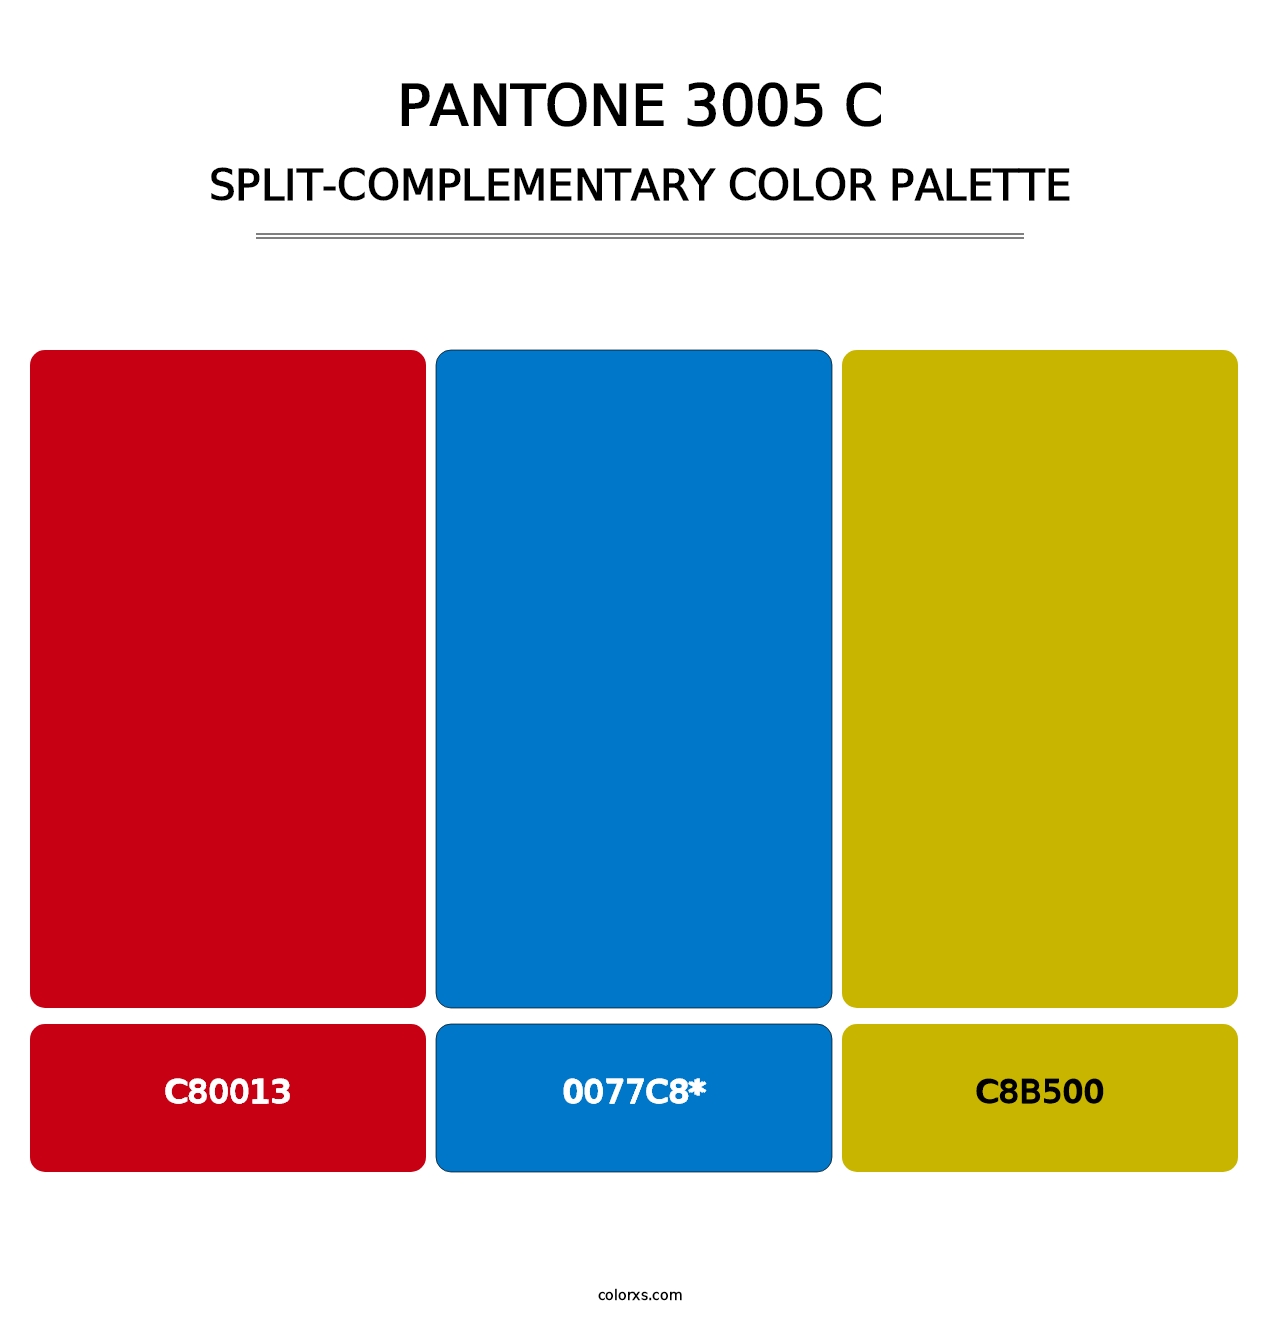 PANTONE 3005 C - Split-Complementary Color Palette